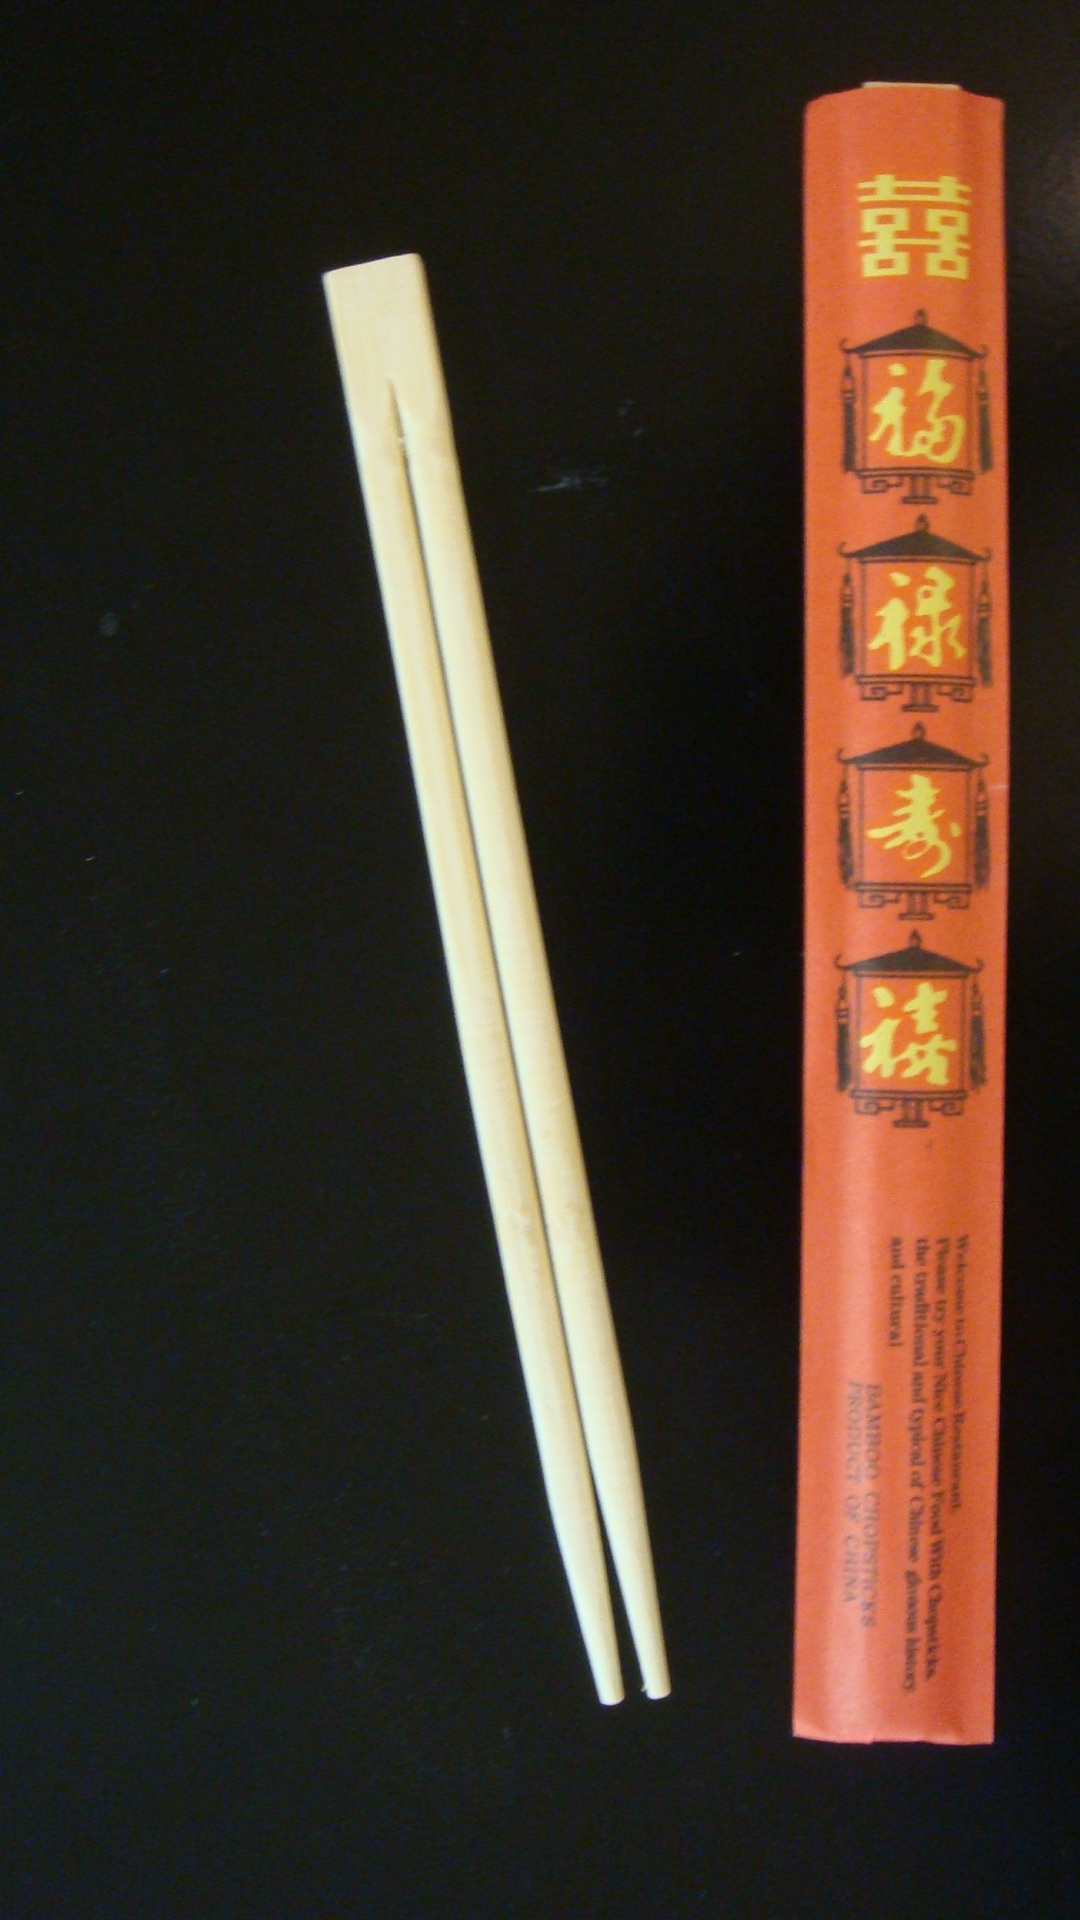 Essstäbchen 21cm, Holz China-Chopsticks, rot verpackt